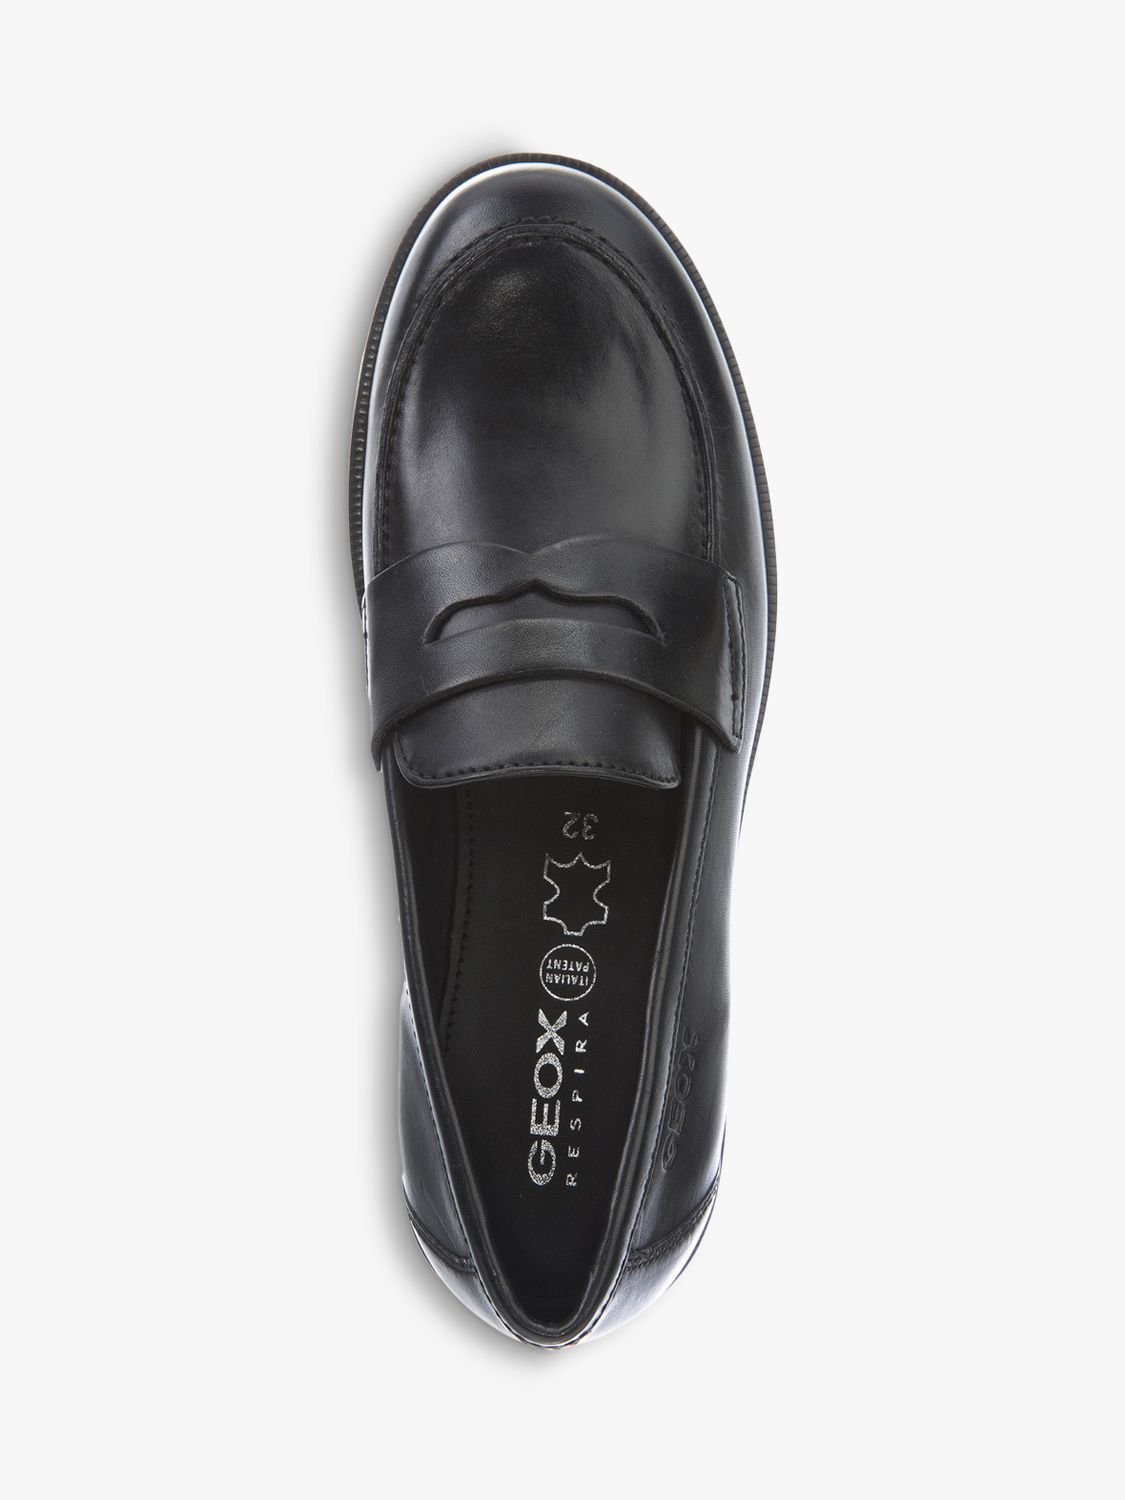 Geox Kids' Agata Slip On Leather Loafers, Black, 26